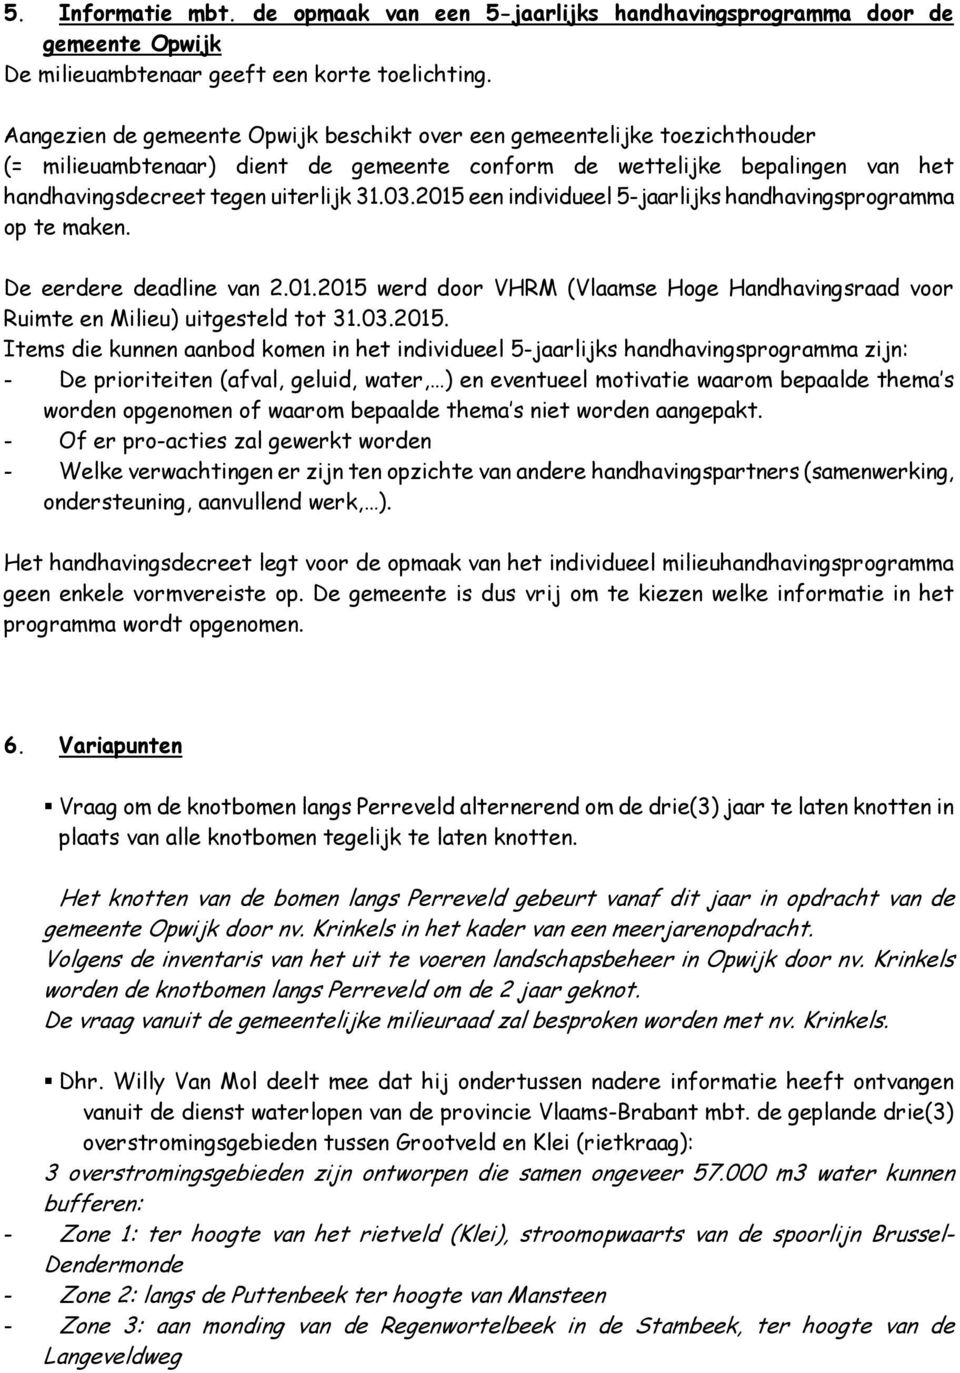 2015 een individueel 5-jaarlijks handhavingsprogramma op te maken. De eerdere deadline van 2.01.2015 werd door VHRM (Vlaamse Hoge Handhavingsraad voor Ruimte en Milieu) uitgesteld tot 31.03.2015.